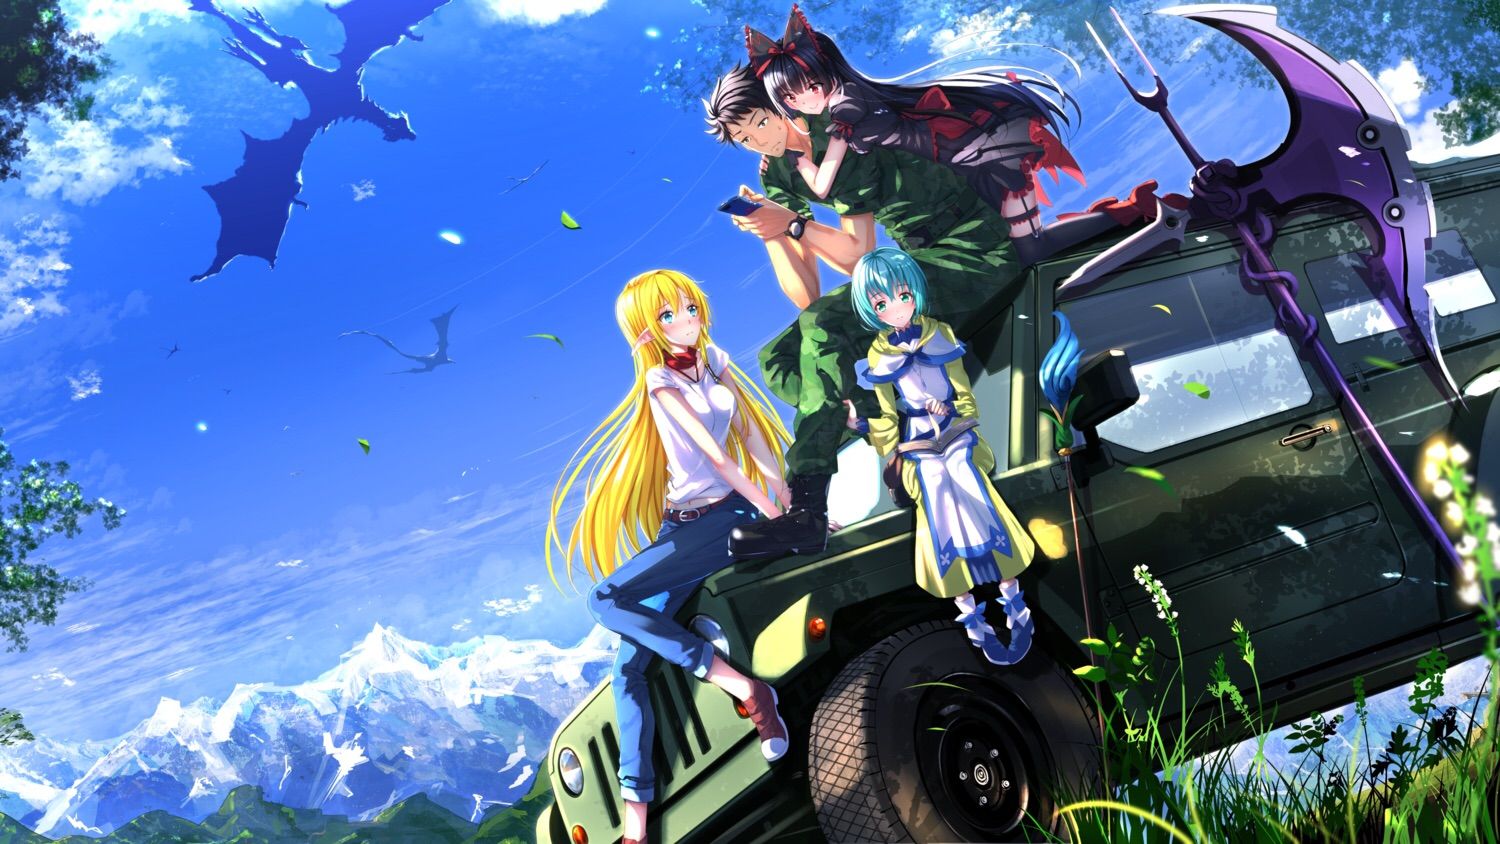 Sangonomiya Kokomi  Genshin Impact Anime Video Game 4K wallpaper  download